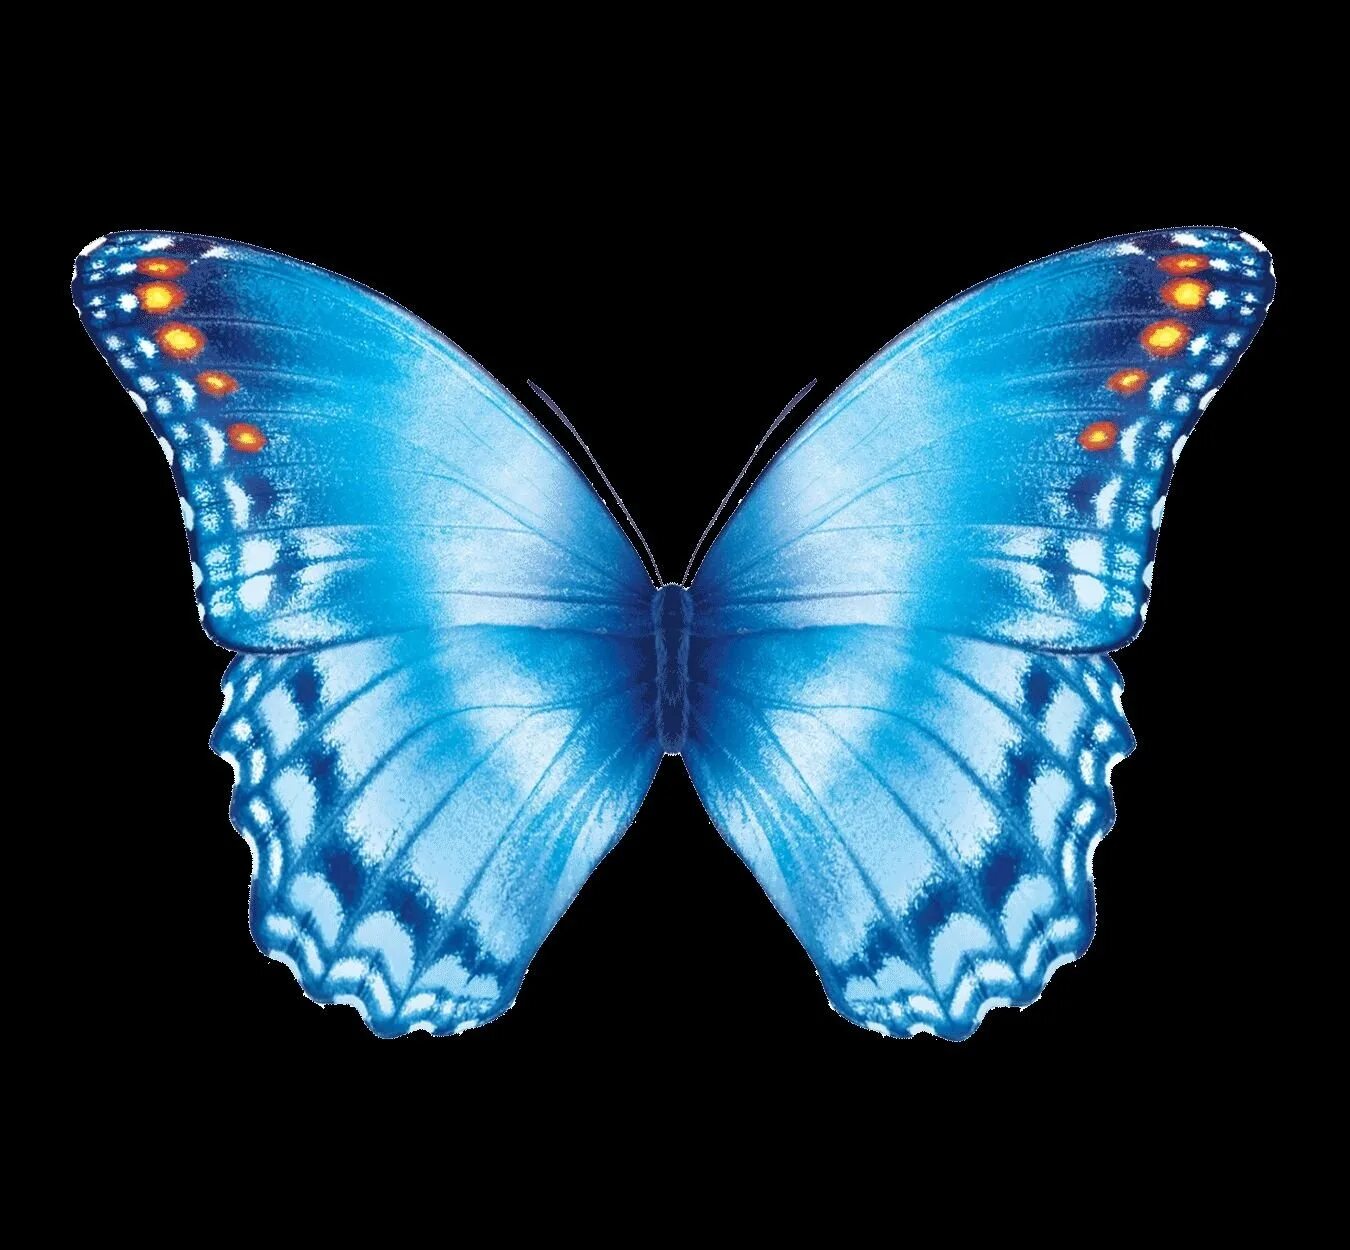 Изображения в формате gif. Бабочки. Анимация бабочки. Голубая бабочка. Бабочки гиф.